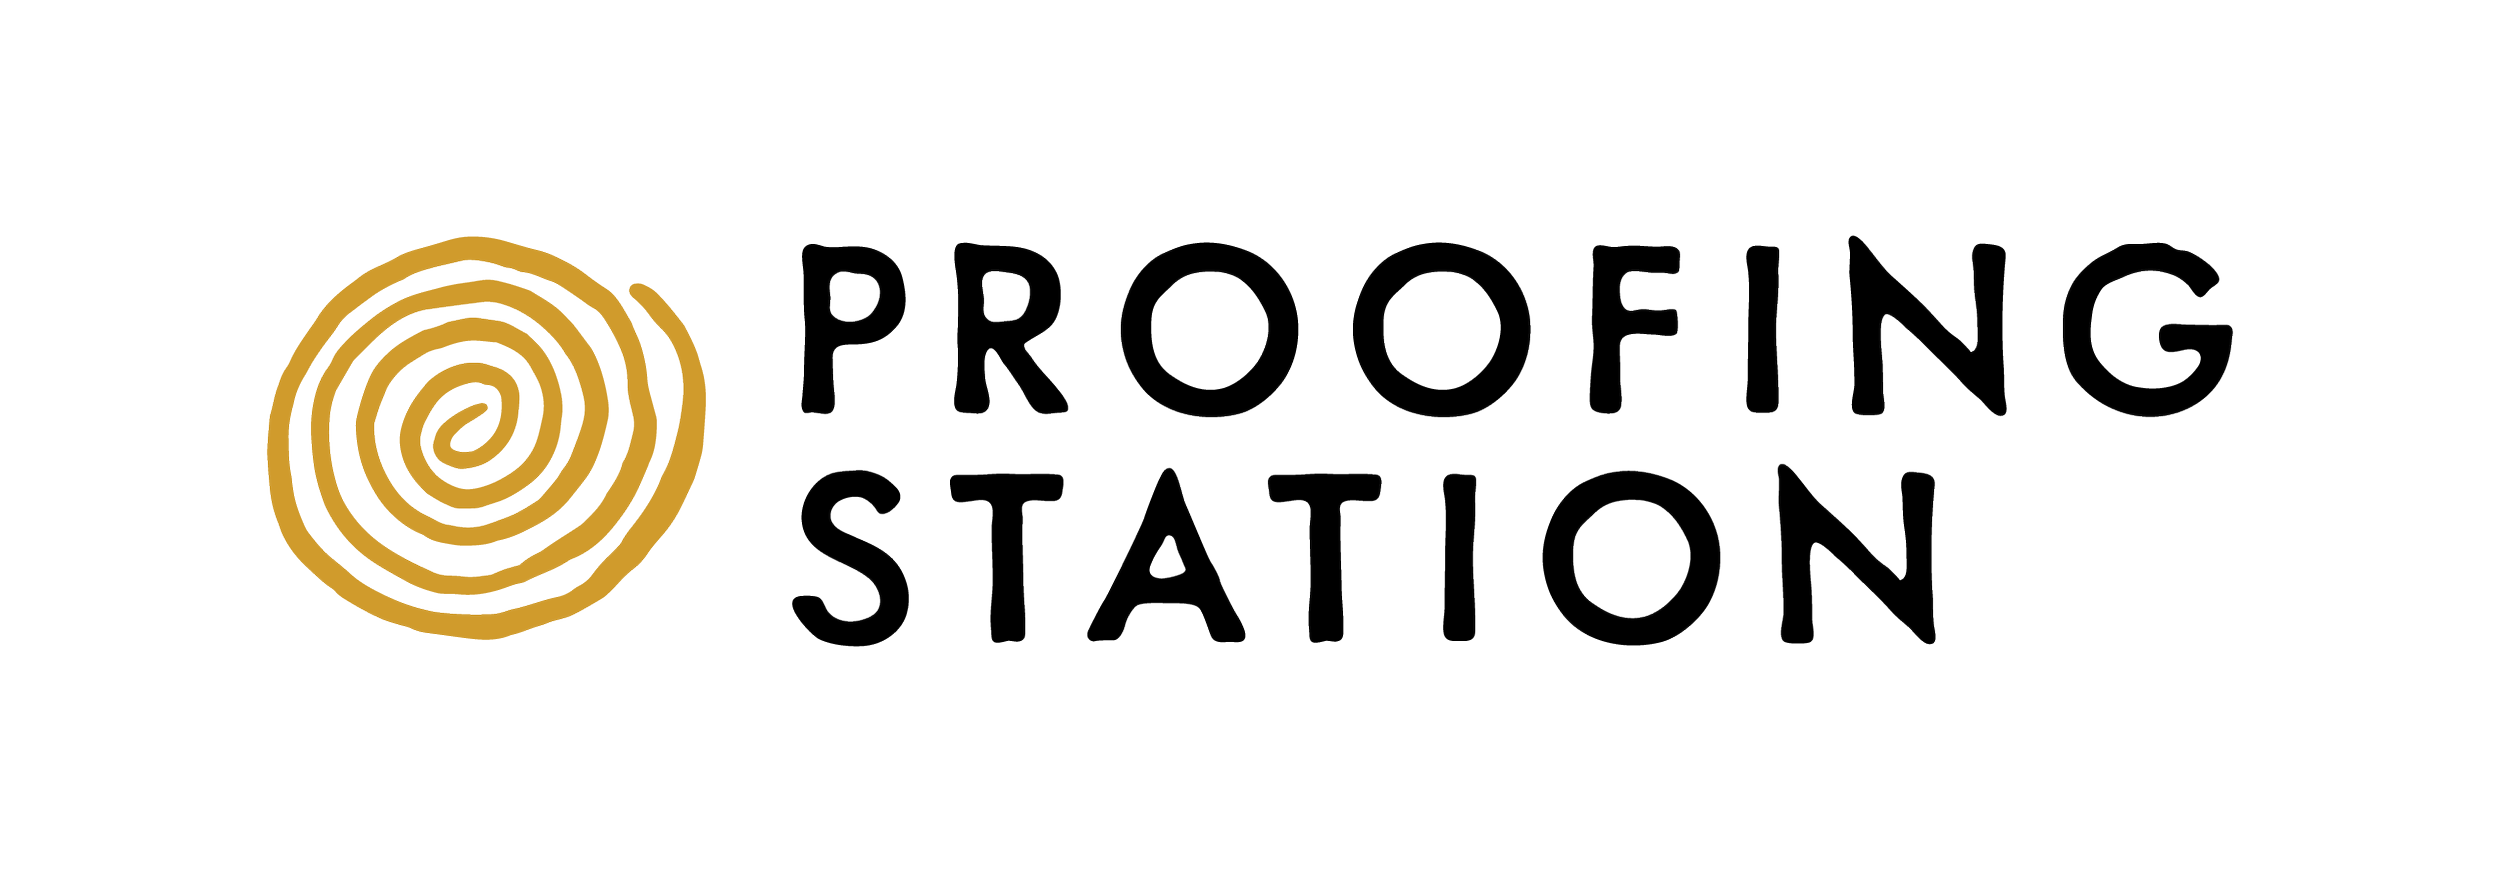 ProofingStation_Website.png